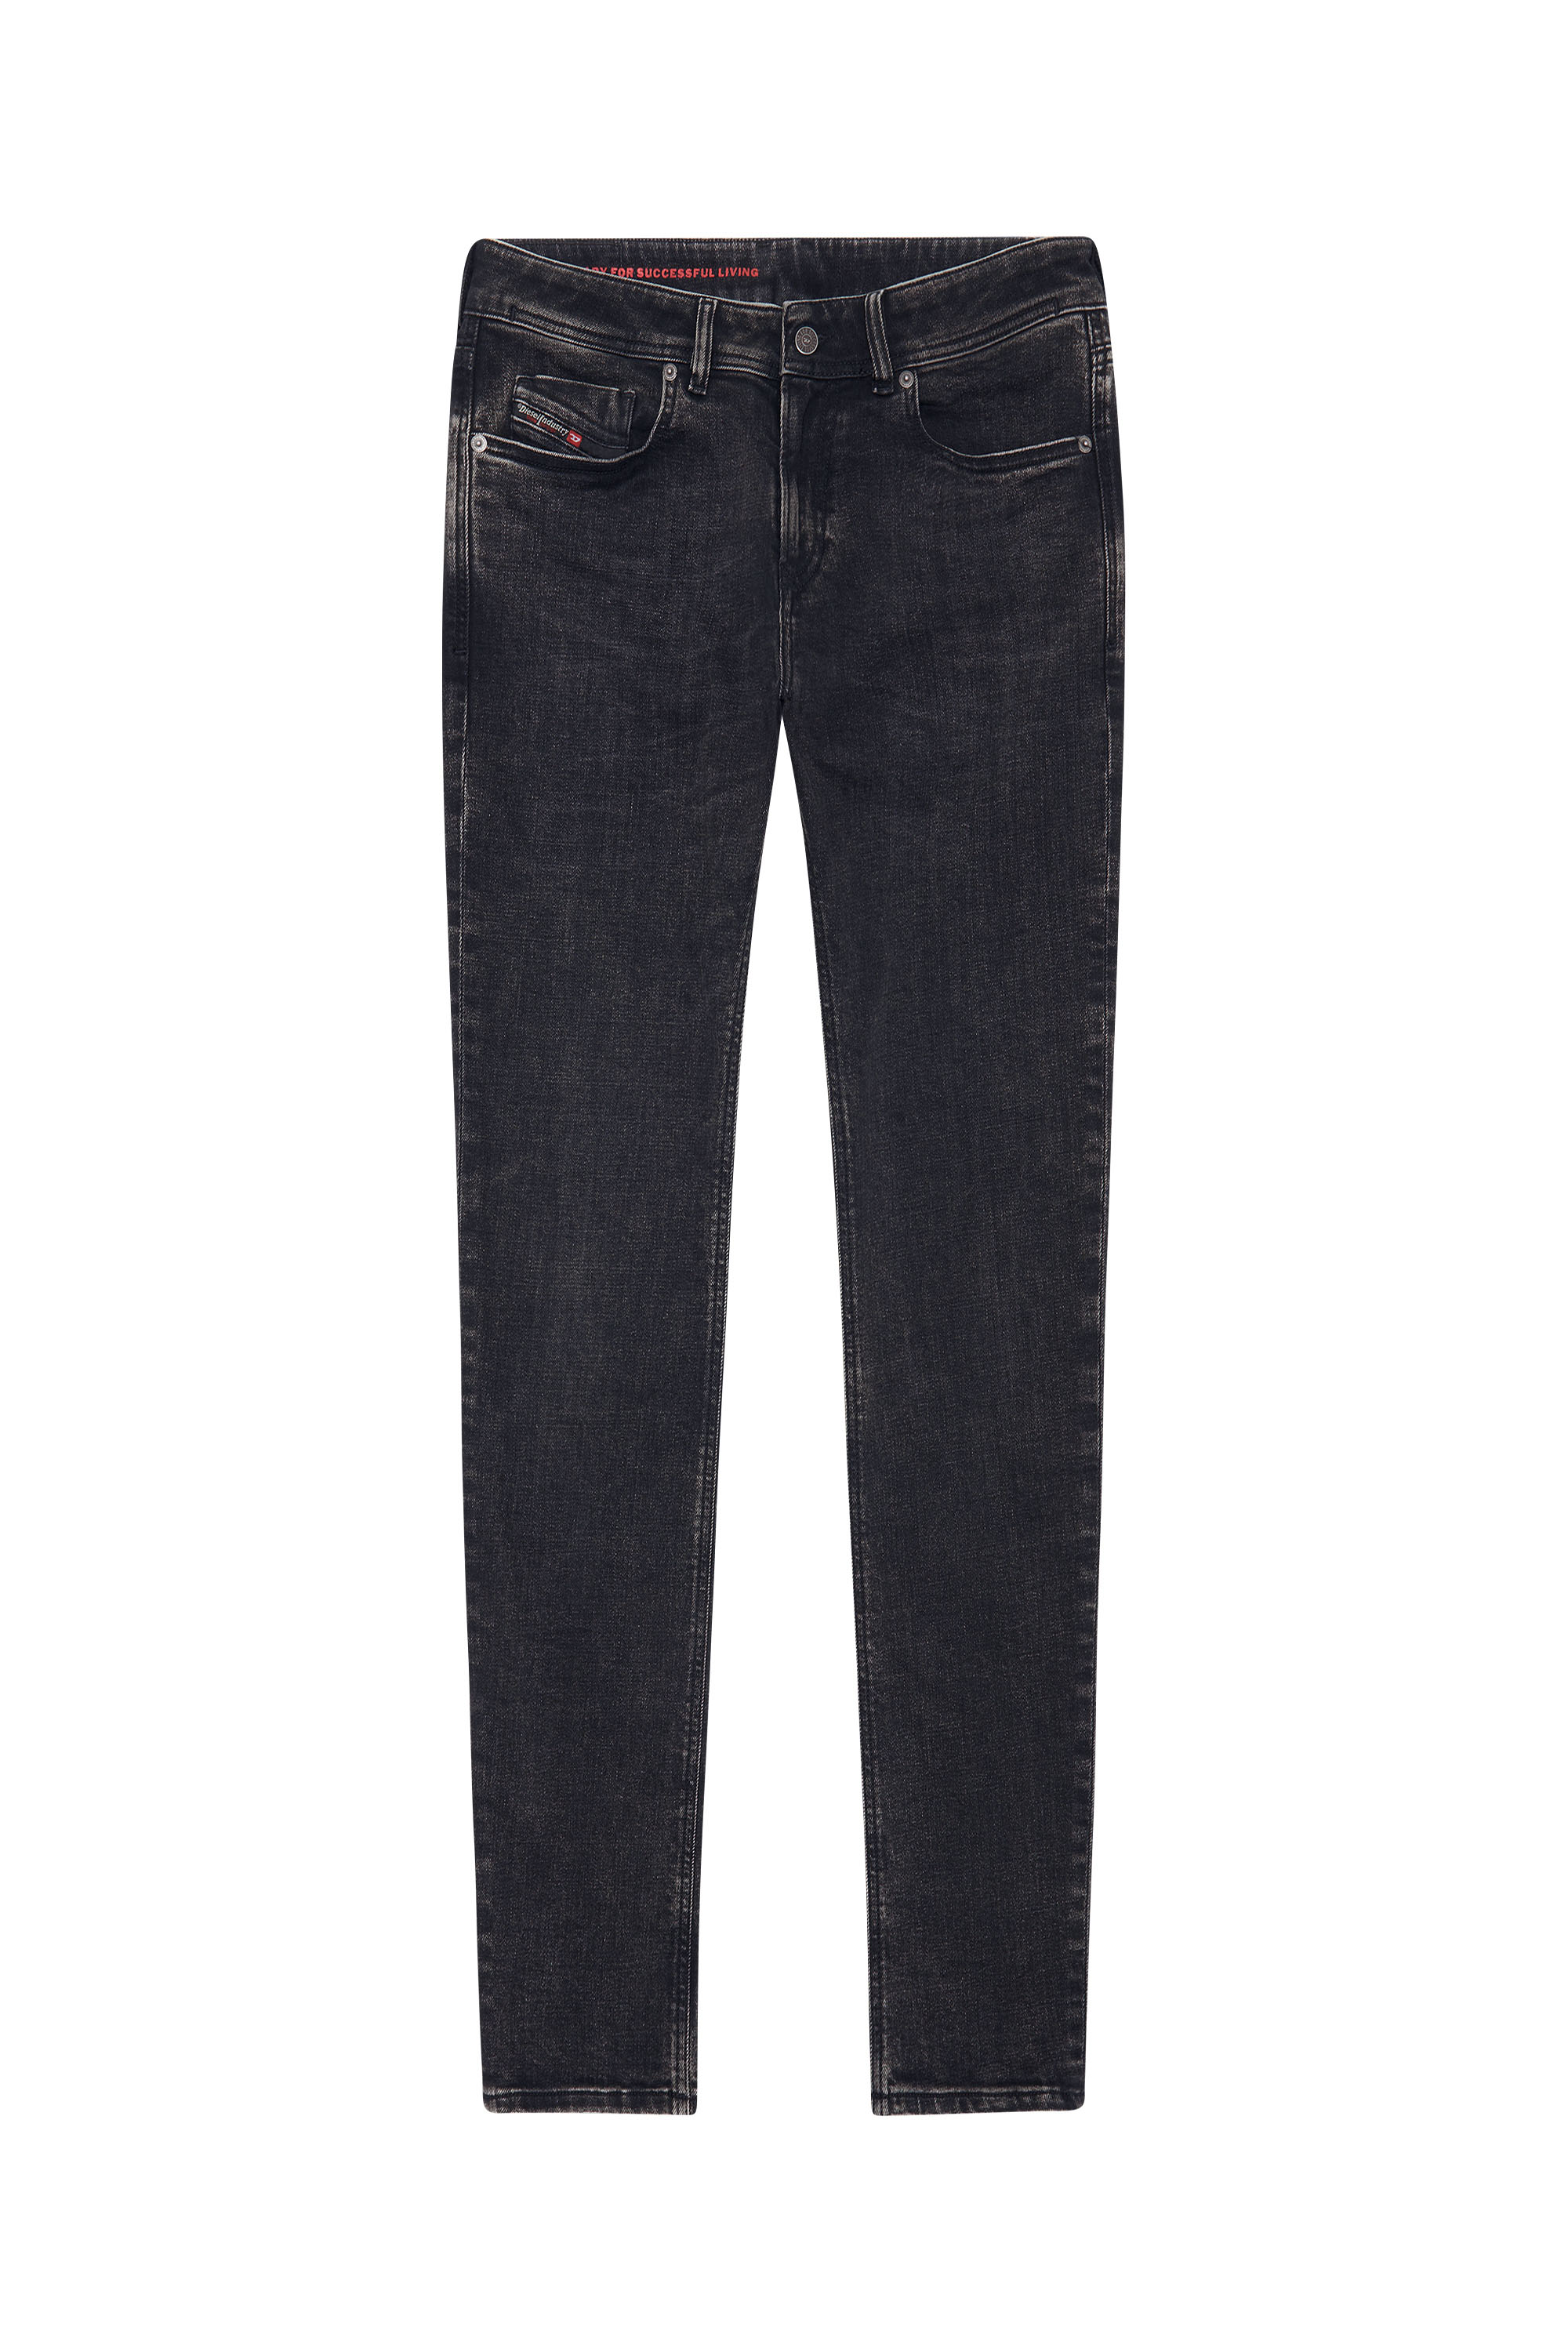 1979 SLEENKER 09C23 Skinny Jeans, Black/Dark grey - Jeans